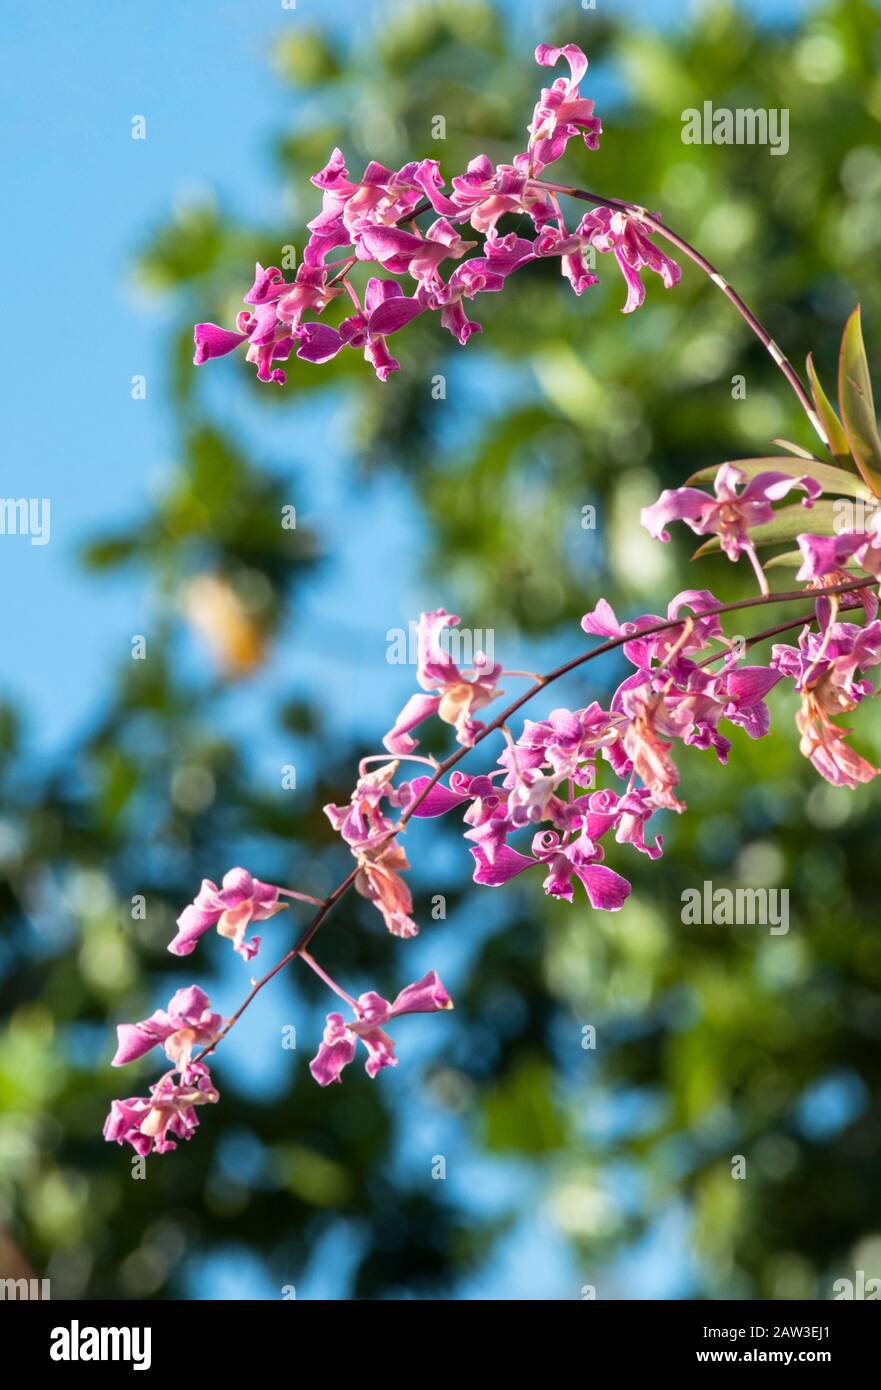 Piccole orchidee magenta in un giorno chiaro, ci sono foglie verdi da un albero in una sfocatura sullo sfondo, si vede il cielo blu attraverso le foglie Foto Stock